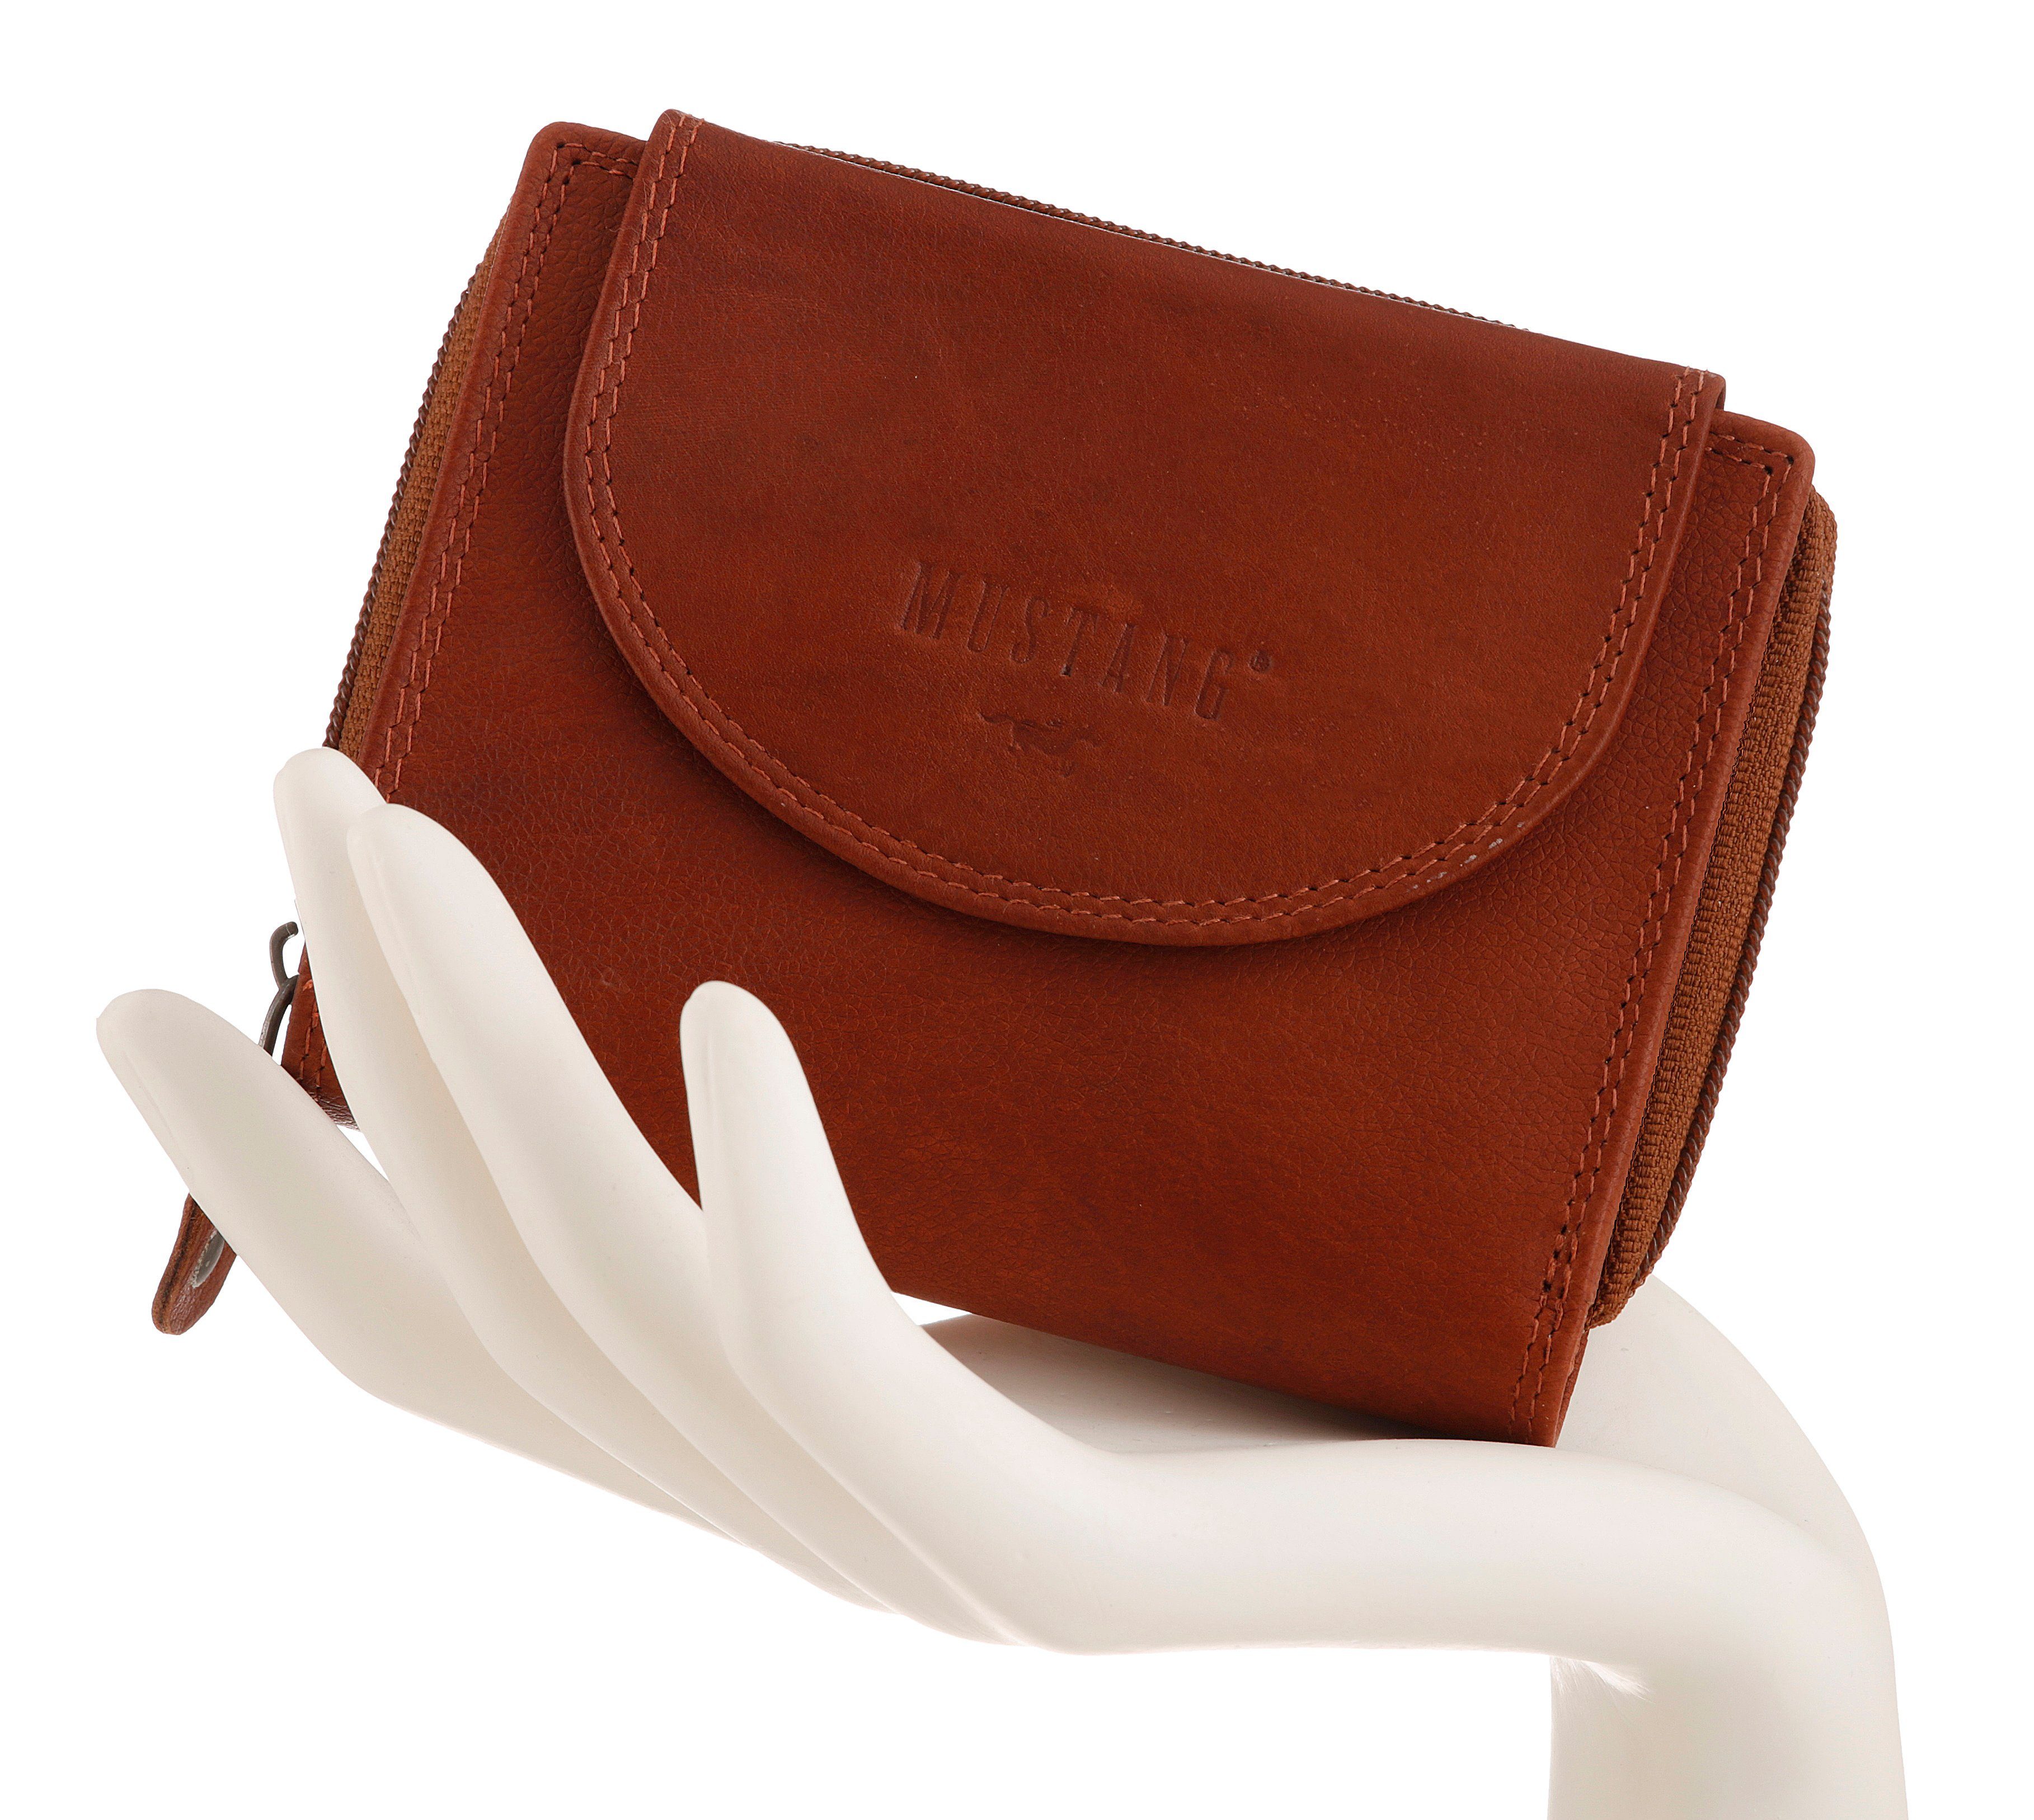 Geldbörse wallet brown top MUSTANG Format praktischen Udine im leather opening,